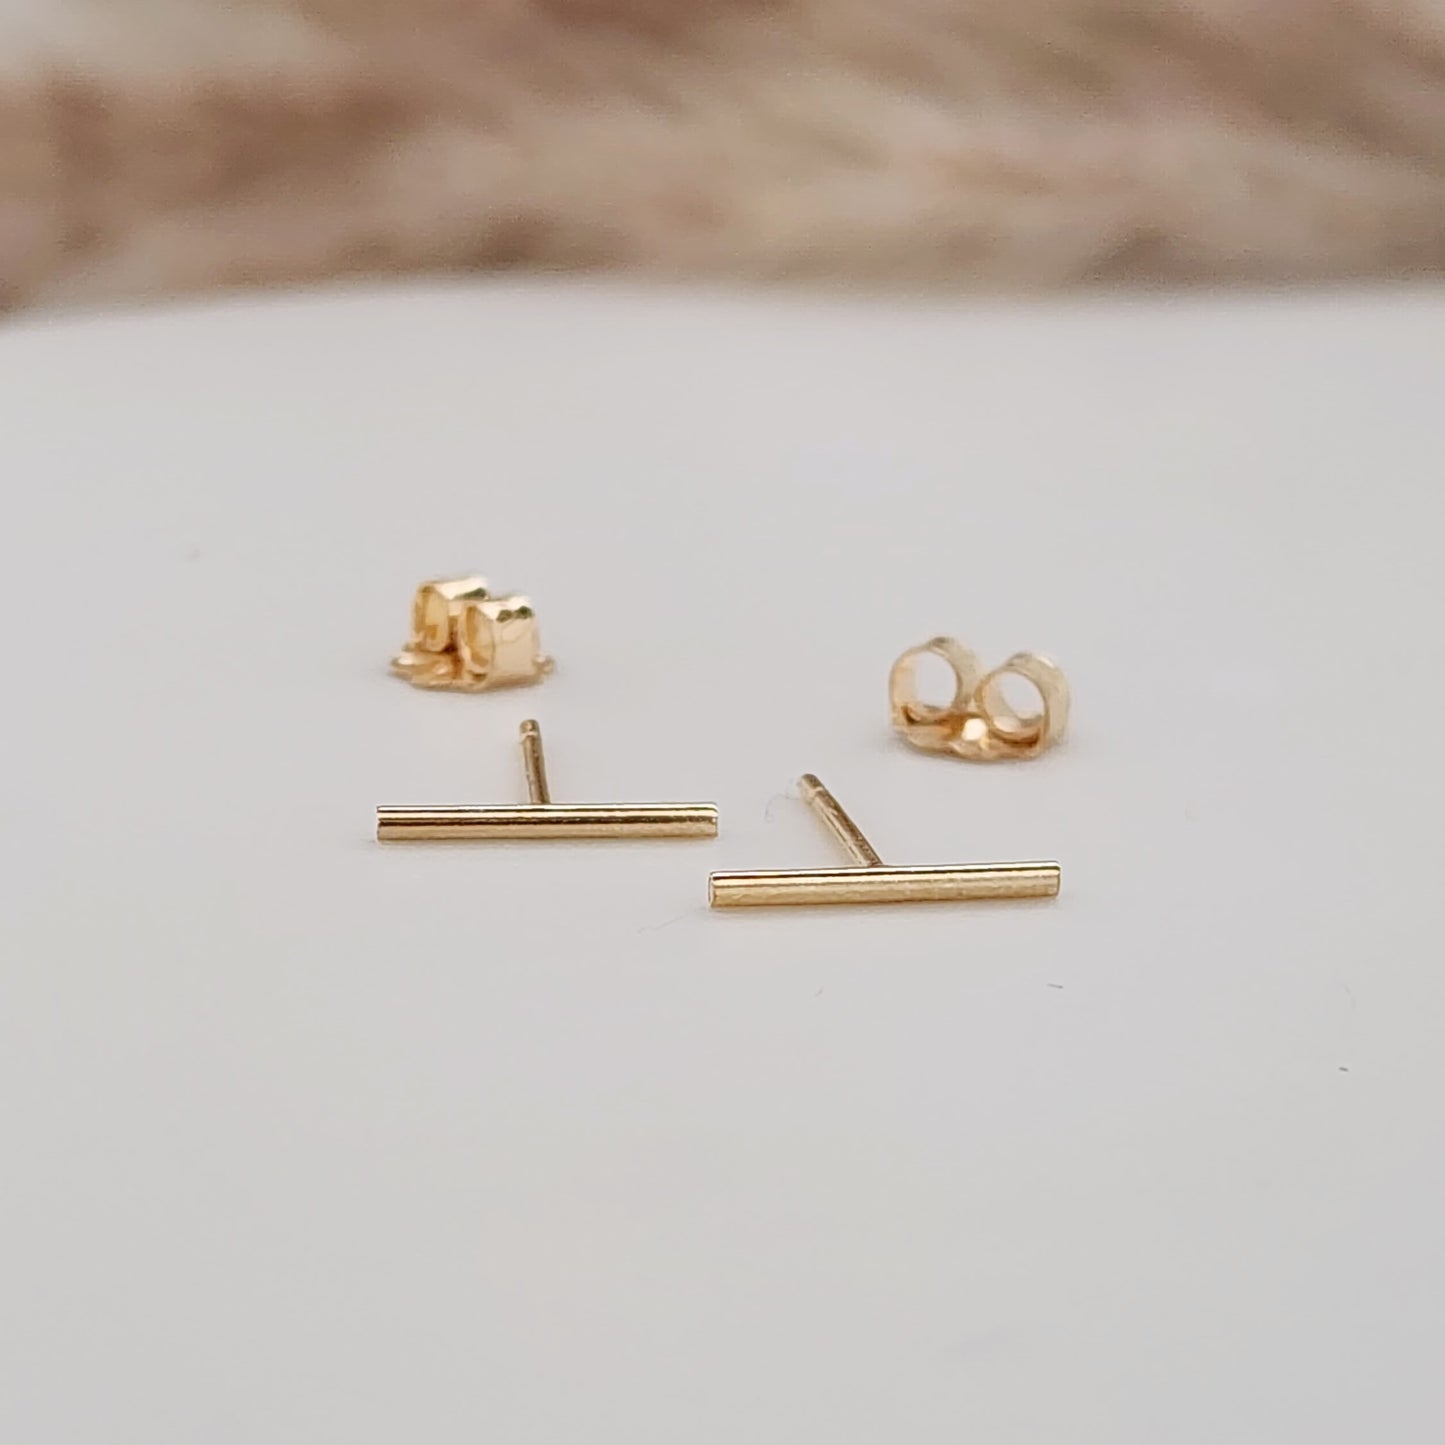 Gold filled bar earrings